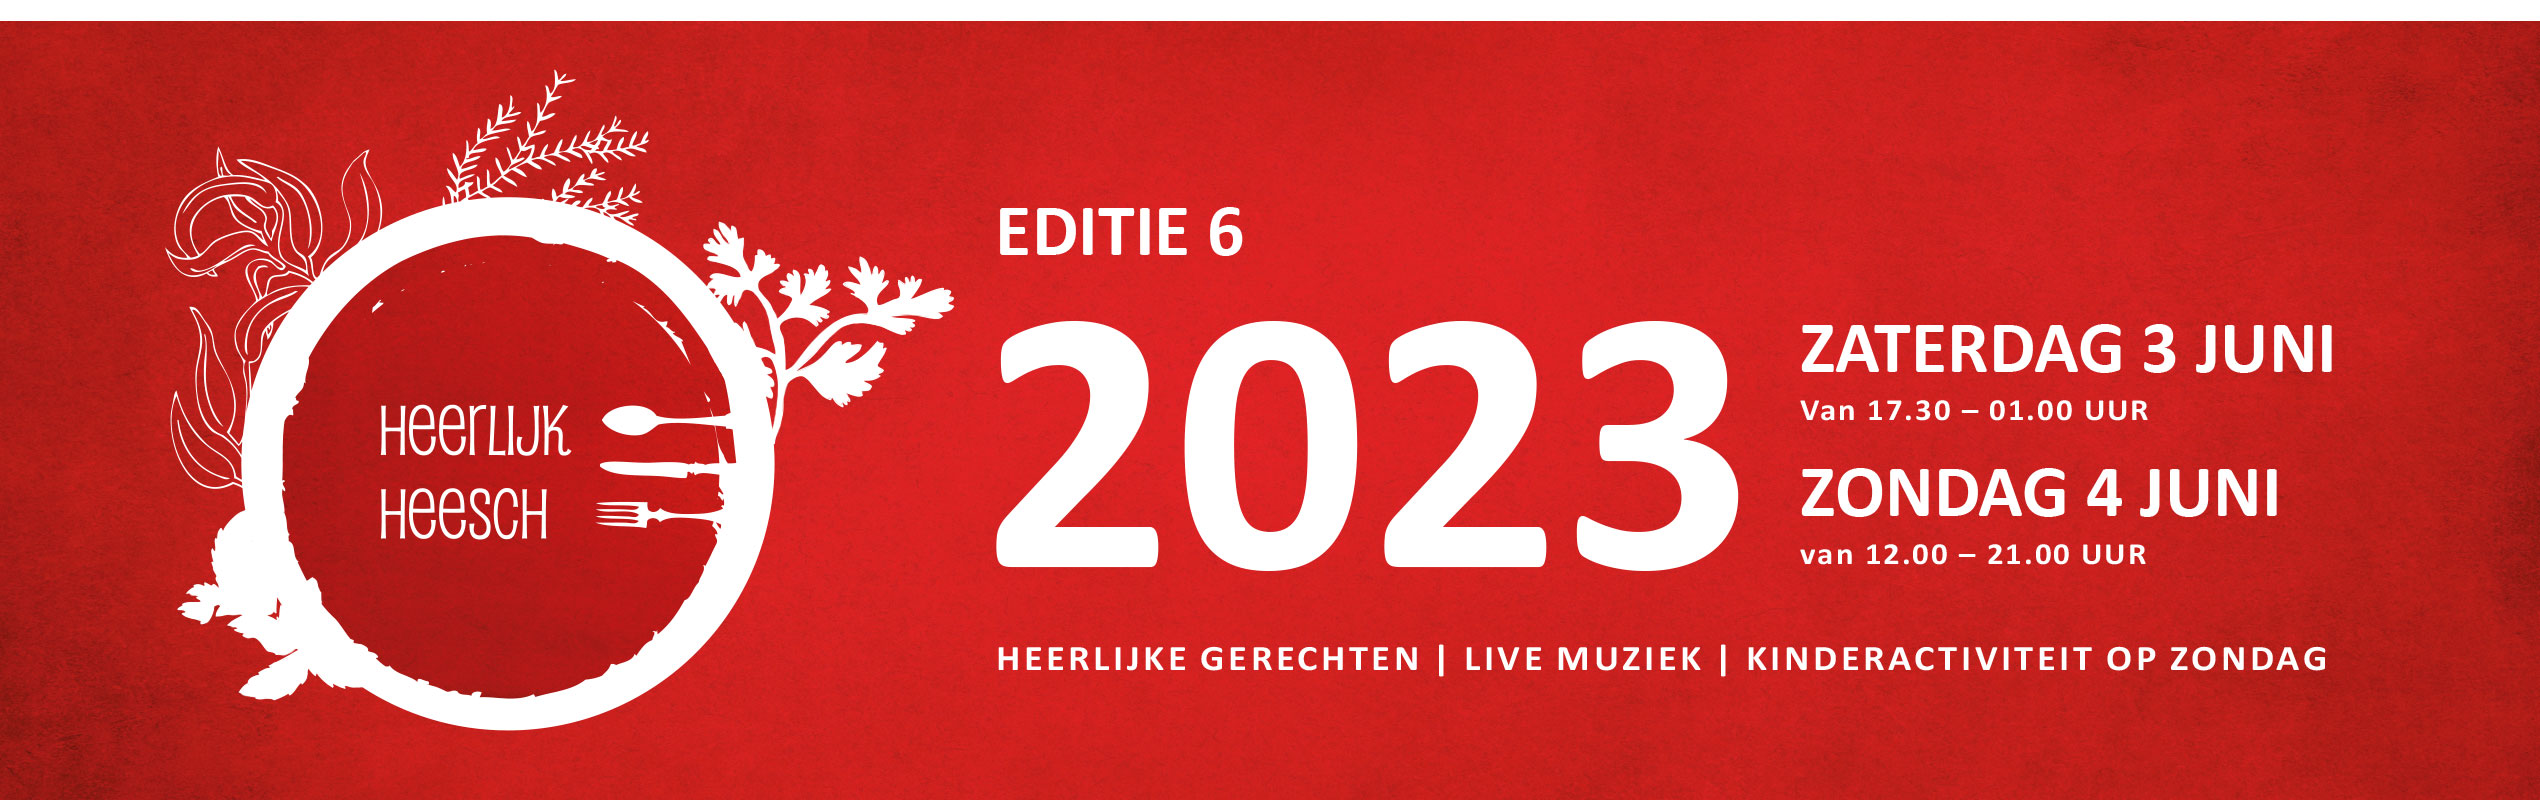 Header Heerlijk Heesch 2023